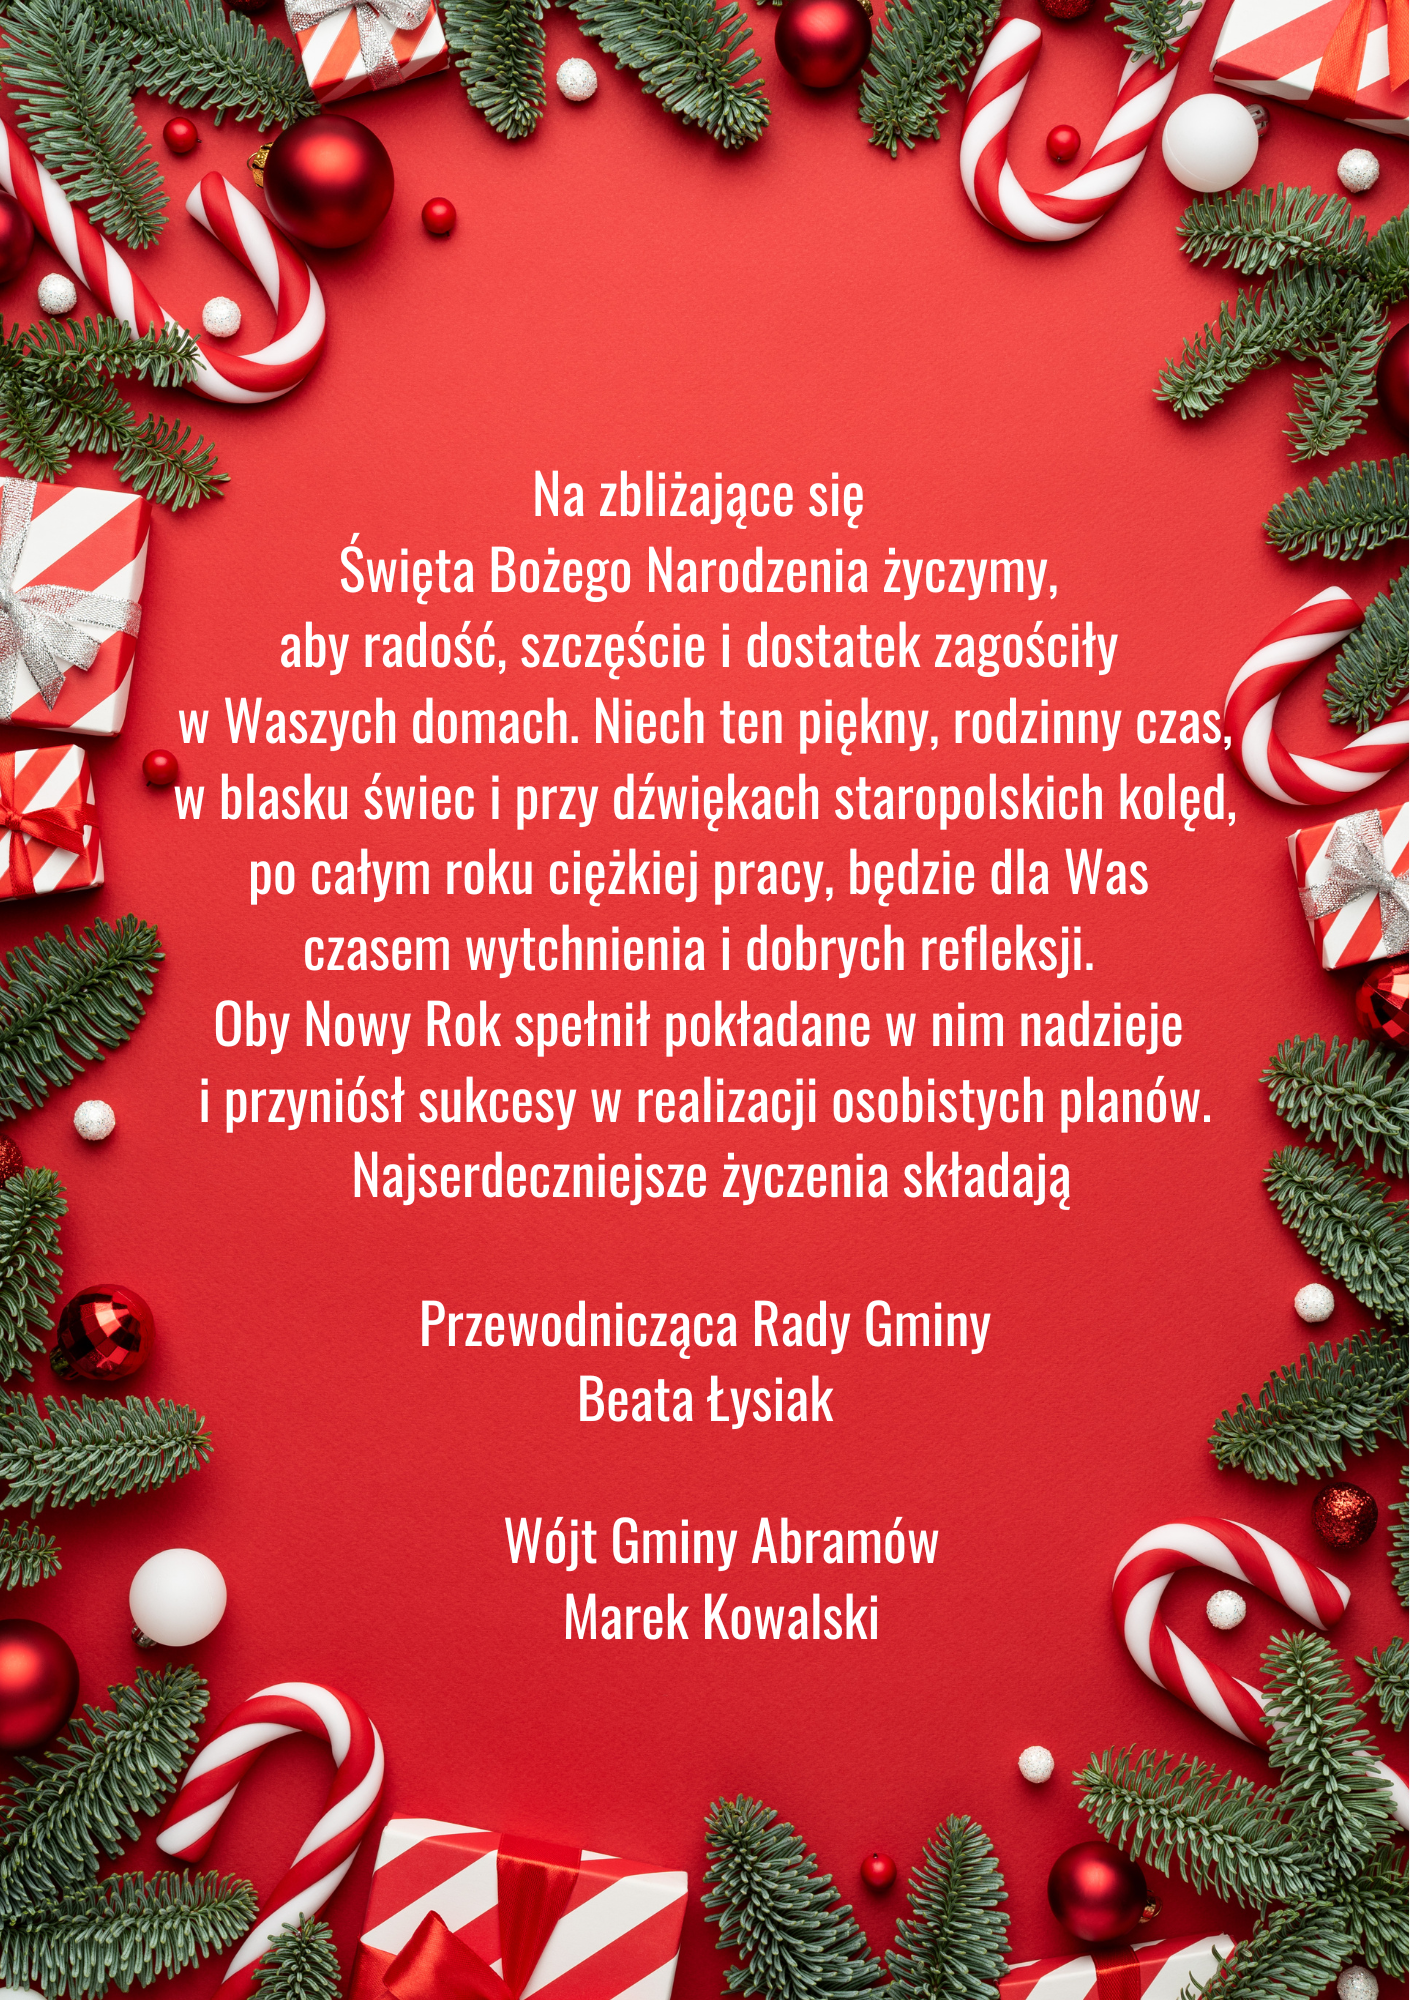 Zdjęcie przedstawia świąteczną kartkę z życzeniami w języku polskim, otoczoną dekoracjami takimi jak gałązki choinkowe, czerwone bombki i wstążki na czerwonym tle.